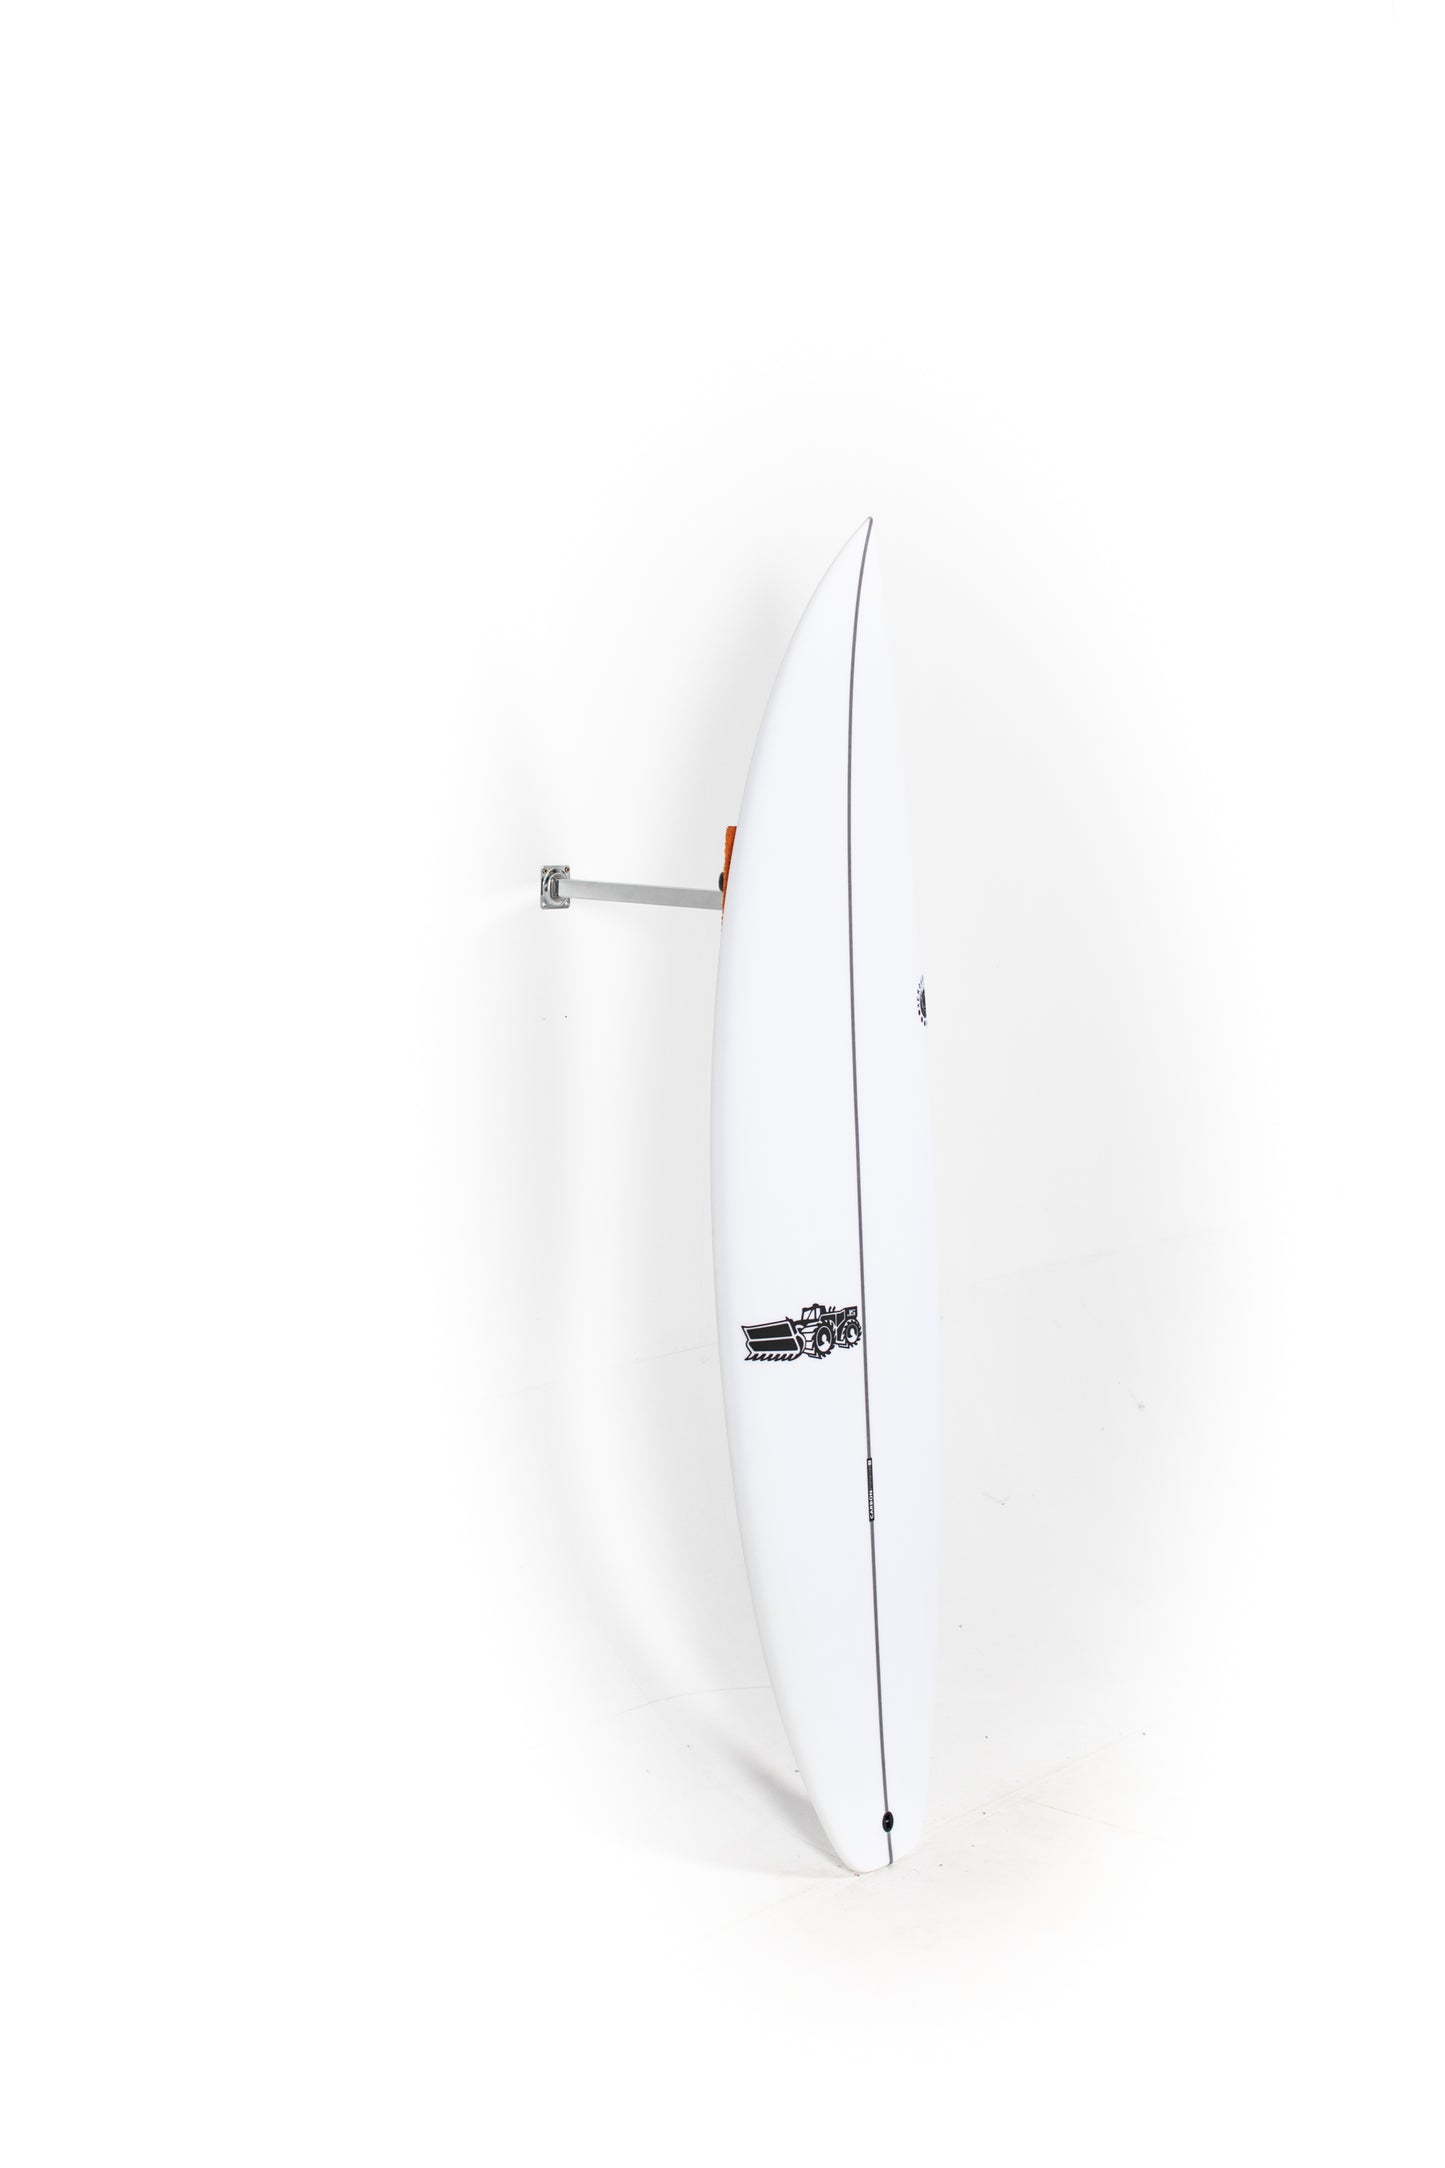 JS Surfboards - XERO GRAVITY - 5'9